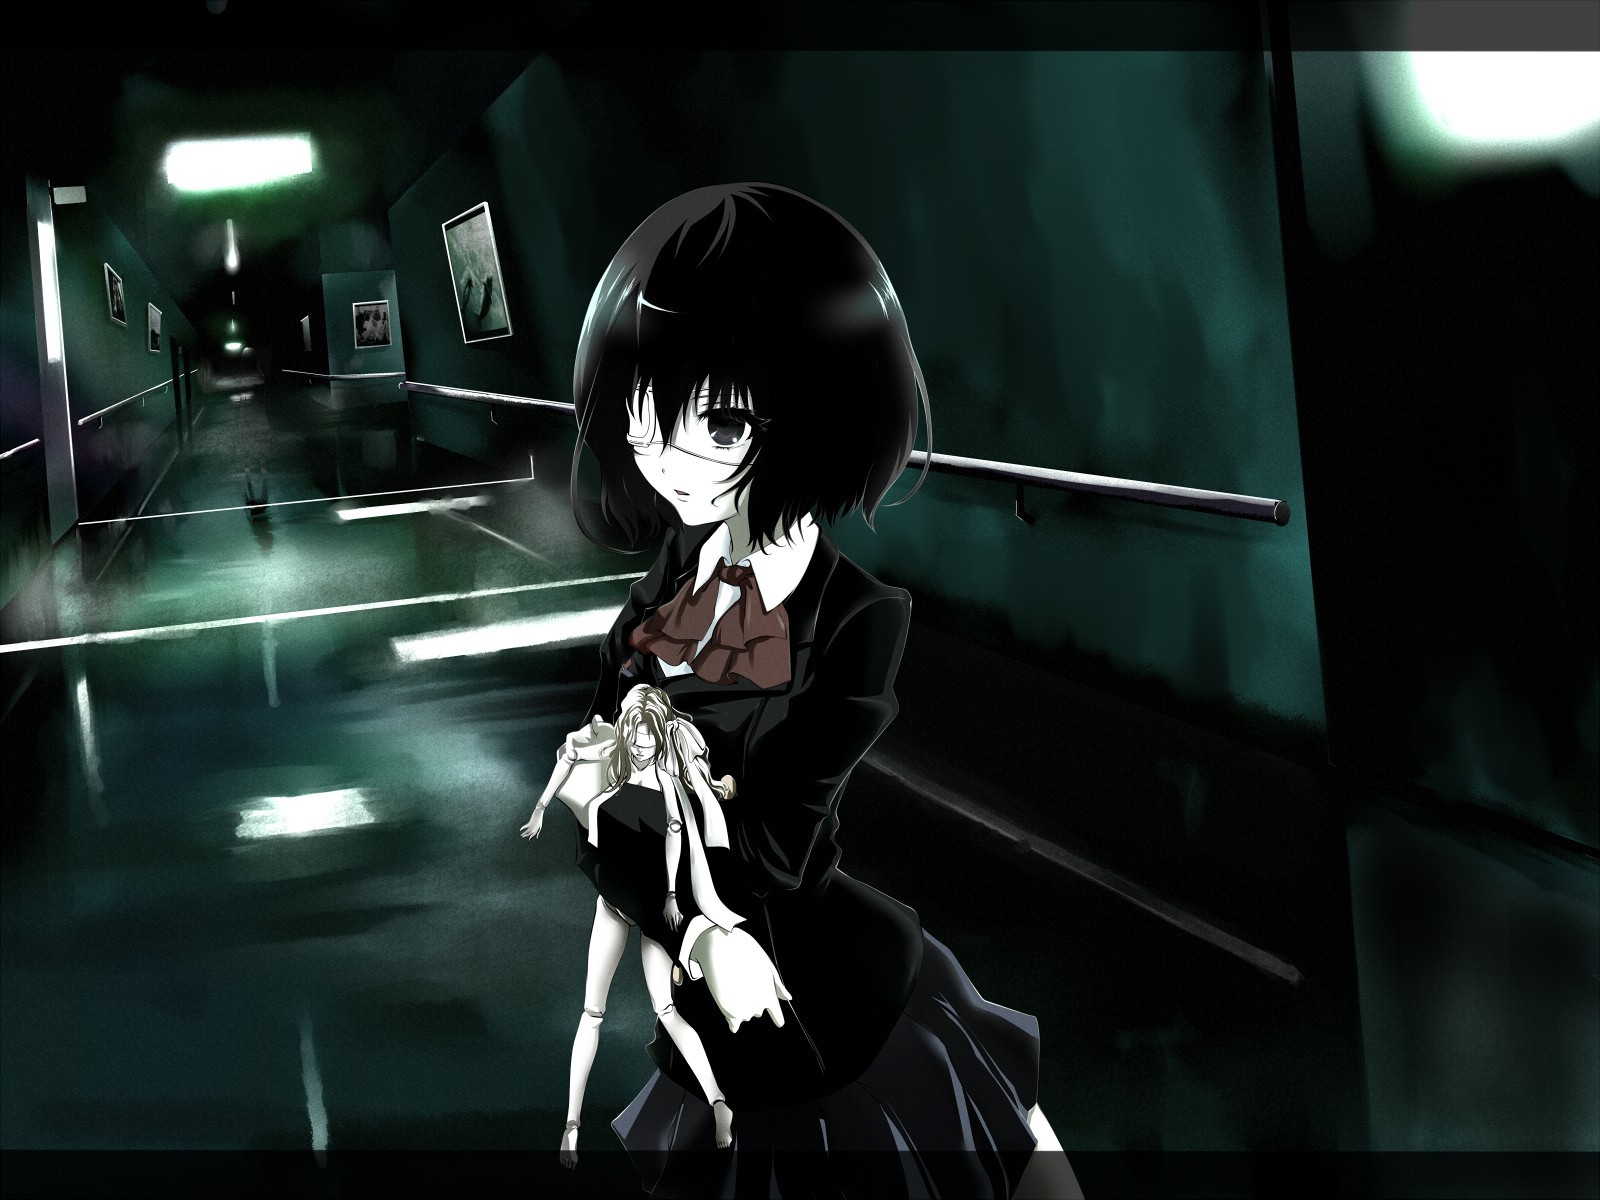 otro fondo de pantalla de anime,cabello negro,instantánea,anime,juegos,juego de pc